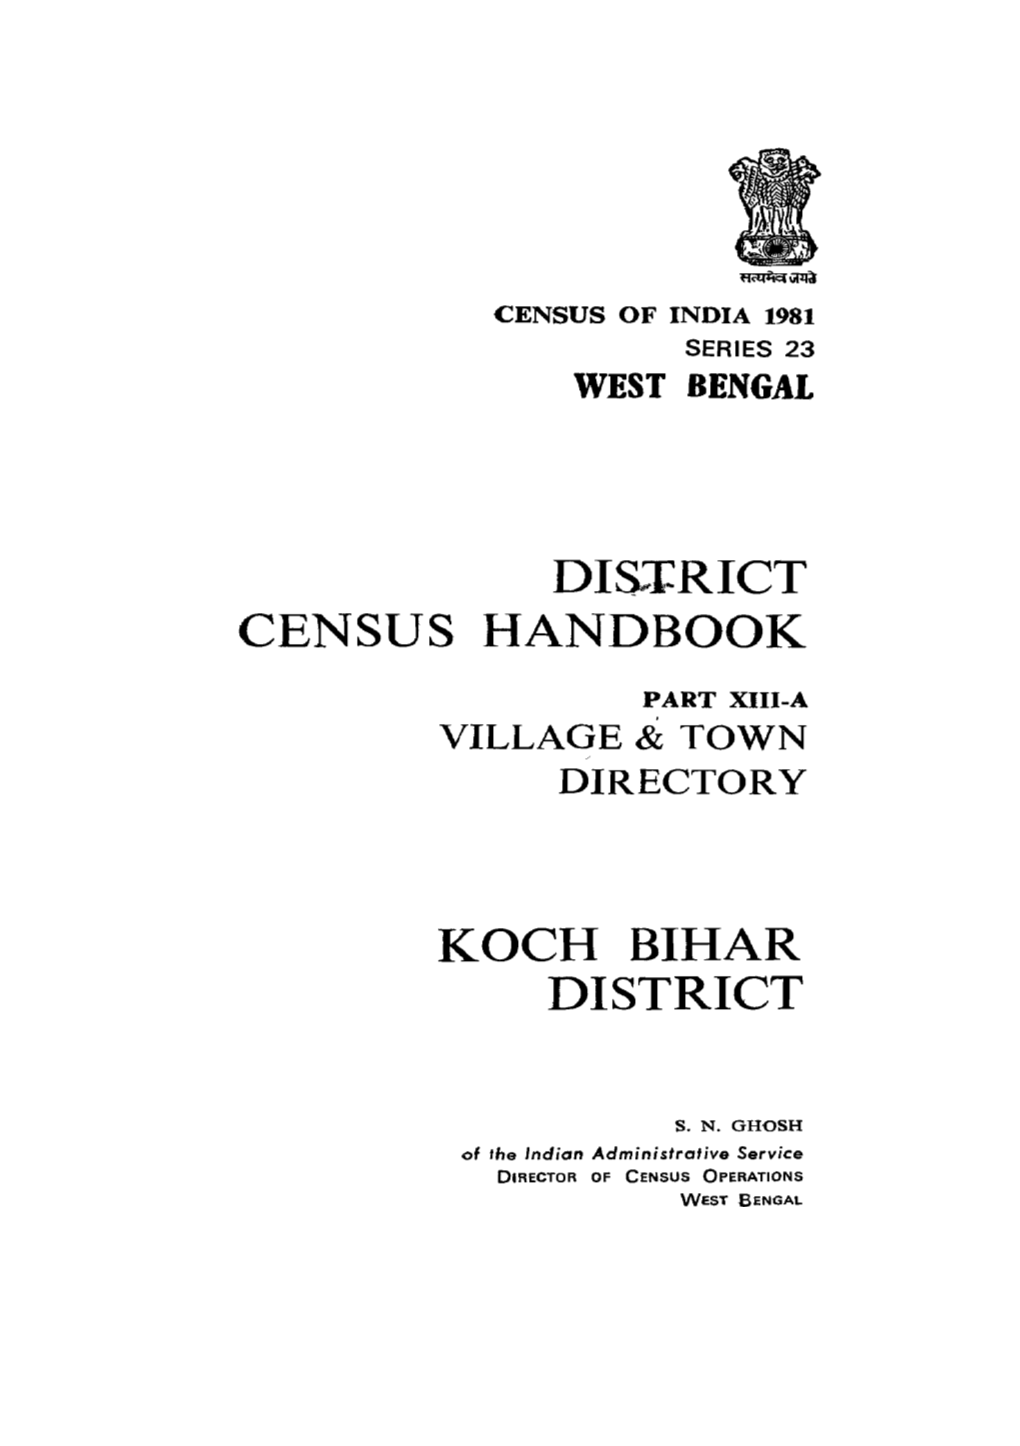 Village & Town Directory, Koch Bihar, Part XIII-A, Series-23, West Bengal